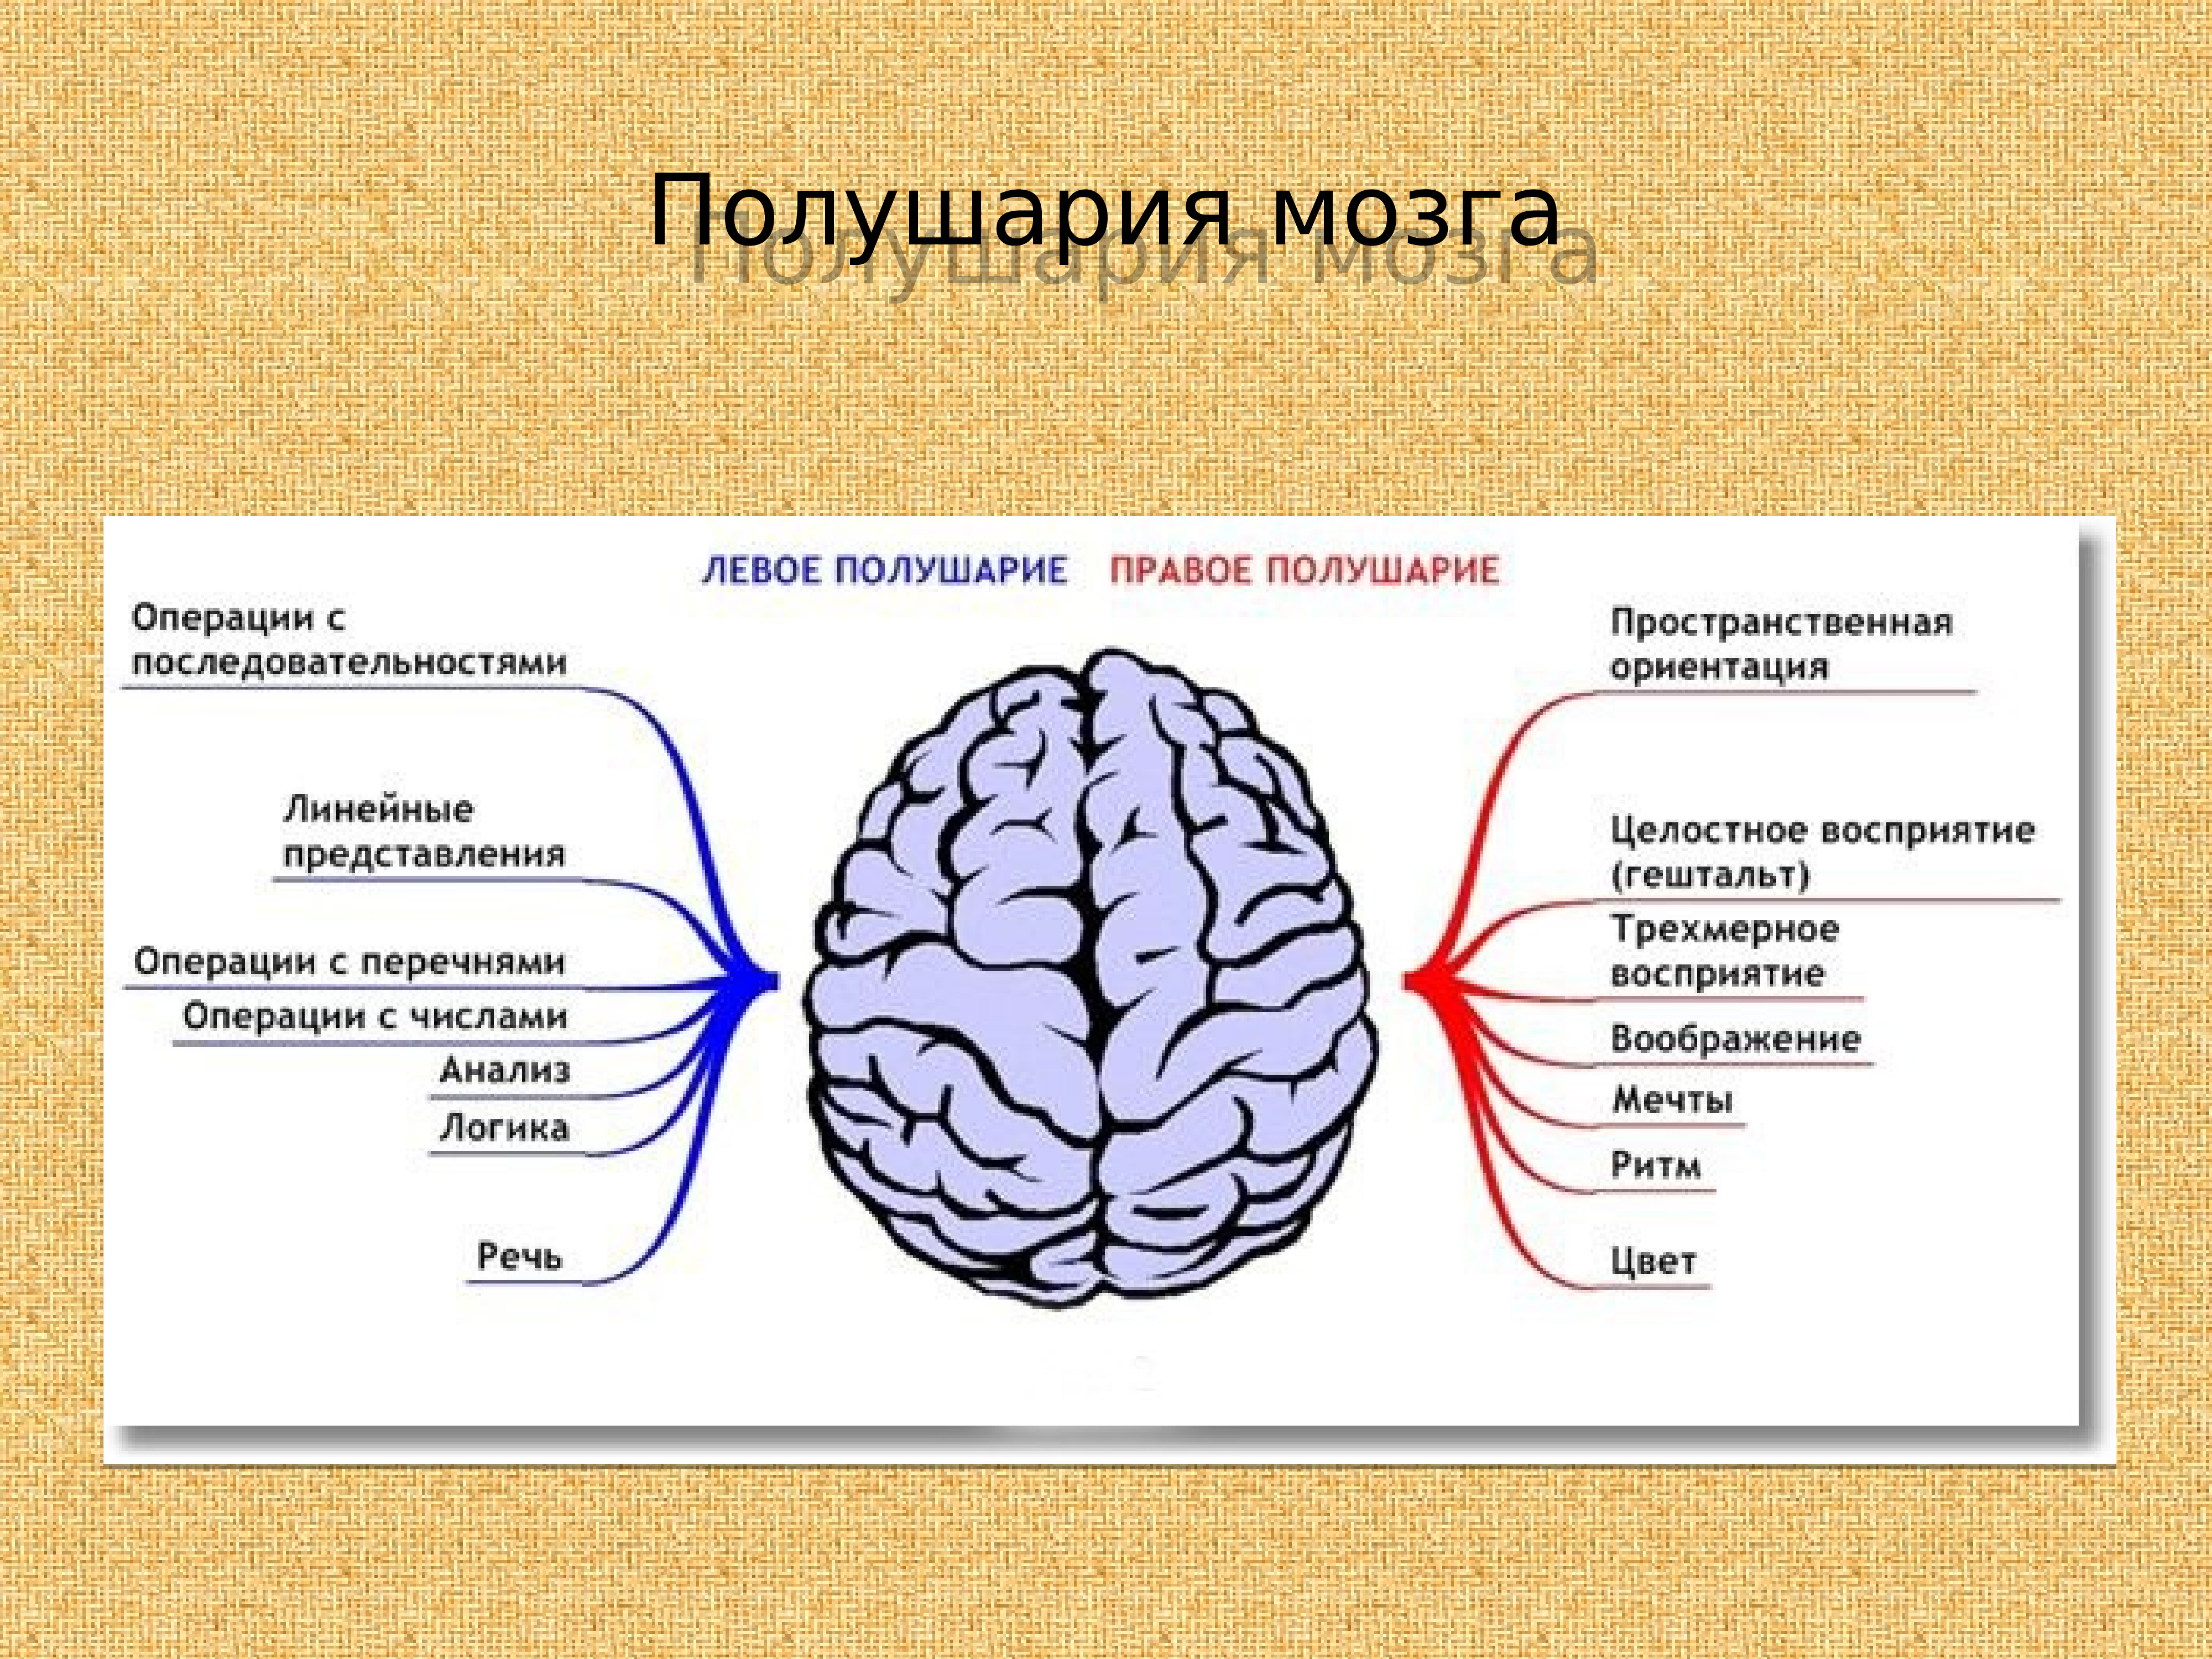 Локализация психических функций в мозге. Локализация психических функций в коре головного мозга. Мозговая локализация высших психических функций. Функциональная асимметрия полушарий. Функциональная асимметрия полушарий мозга.